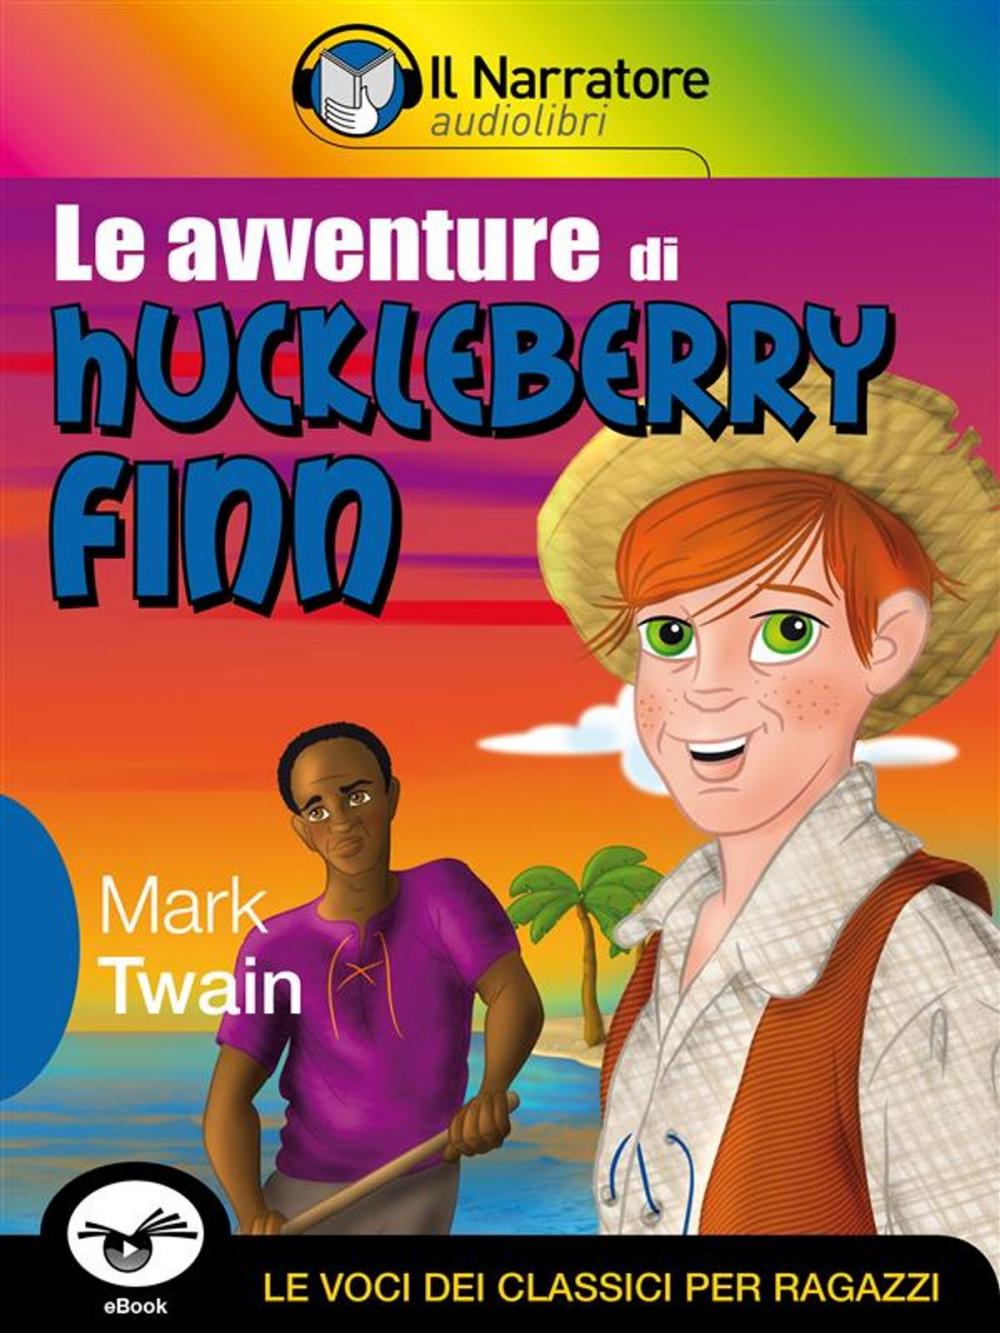 Big bigCover of Le avventure di Huckleberry Finn